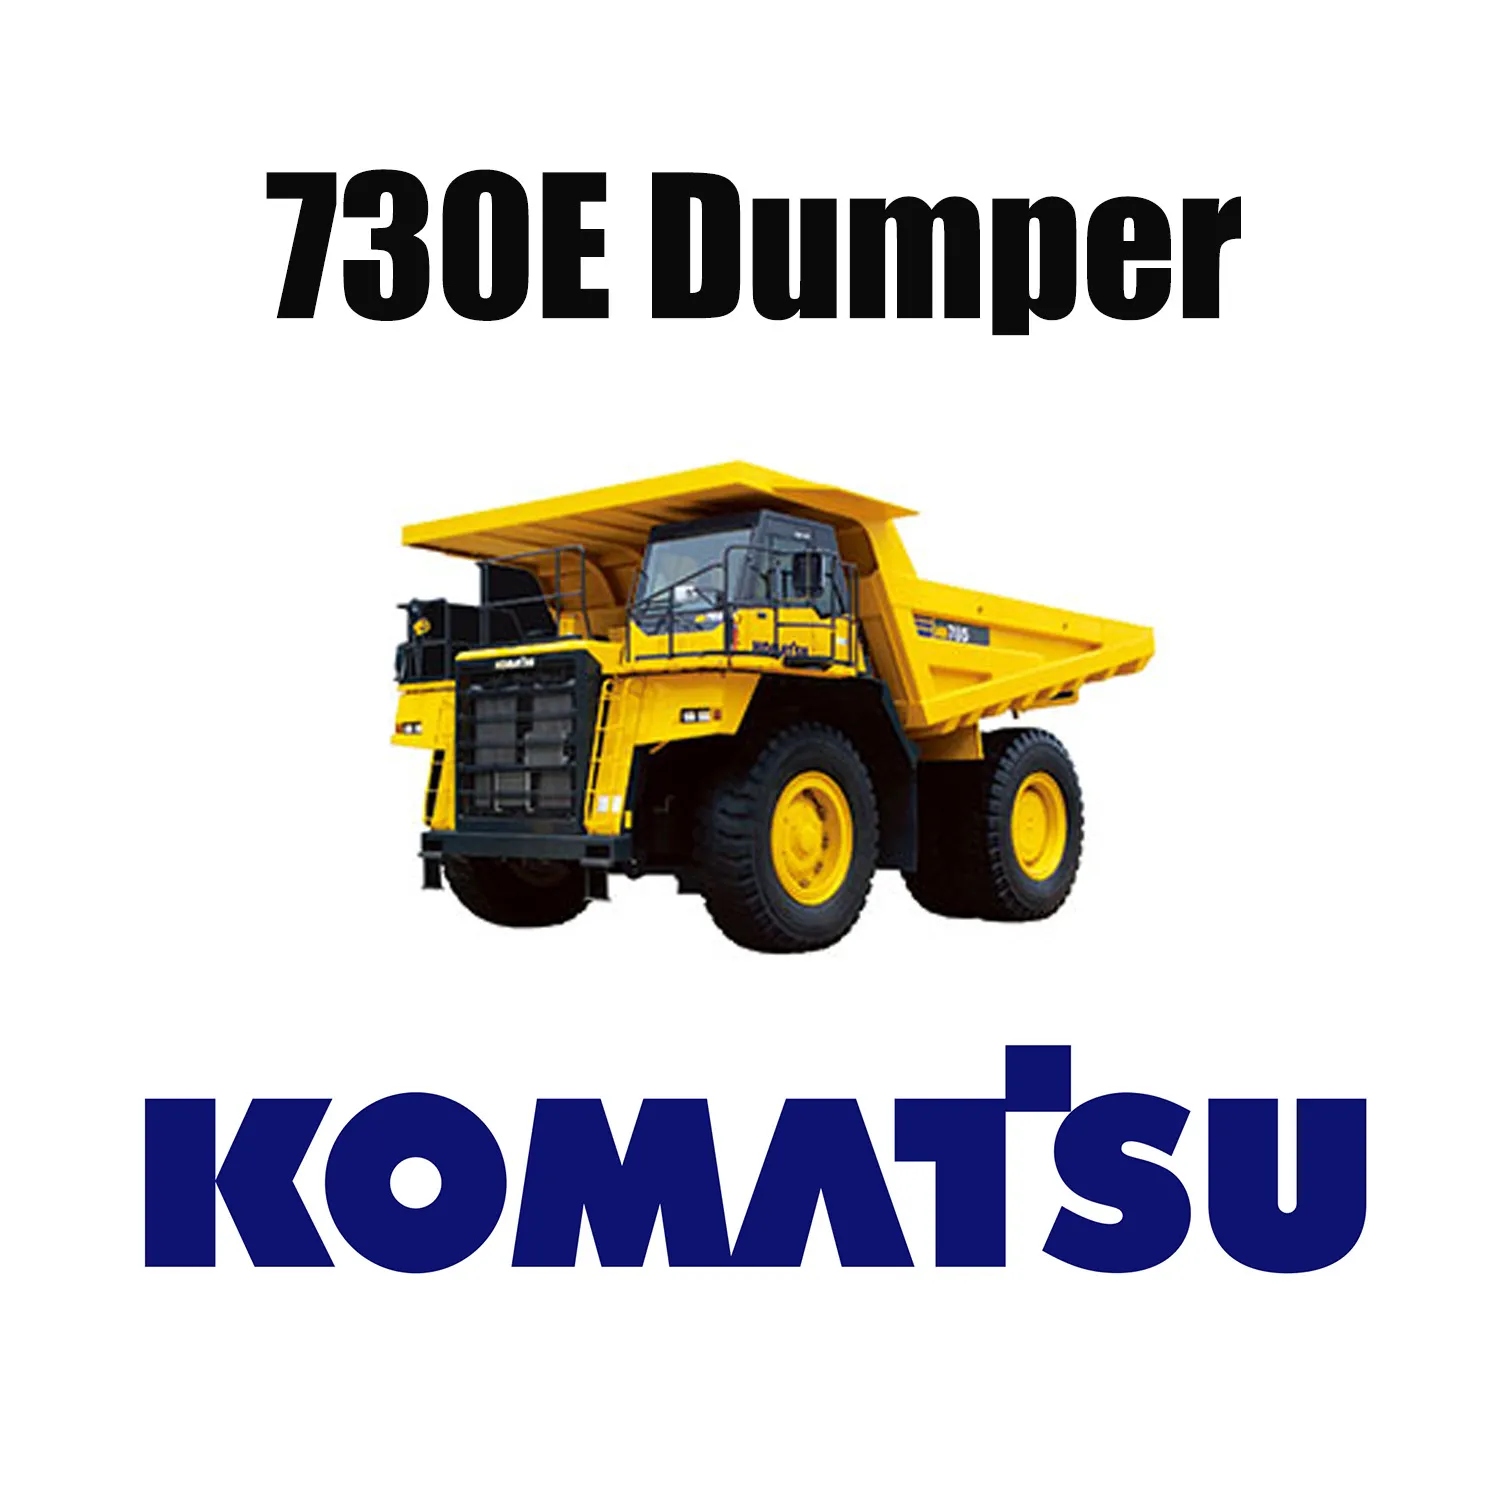 Camions de transport KOMATSU 730E équipés de pneus miniers géants 37.00R57 OTR